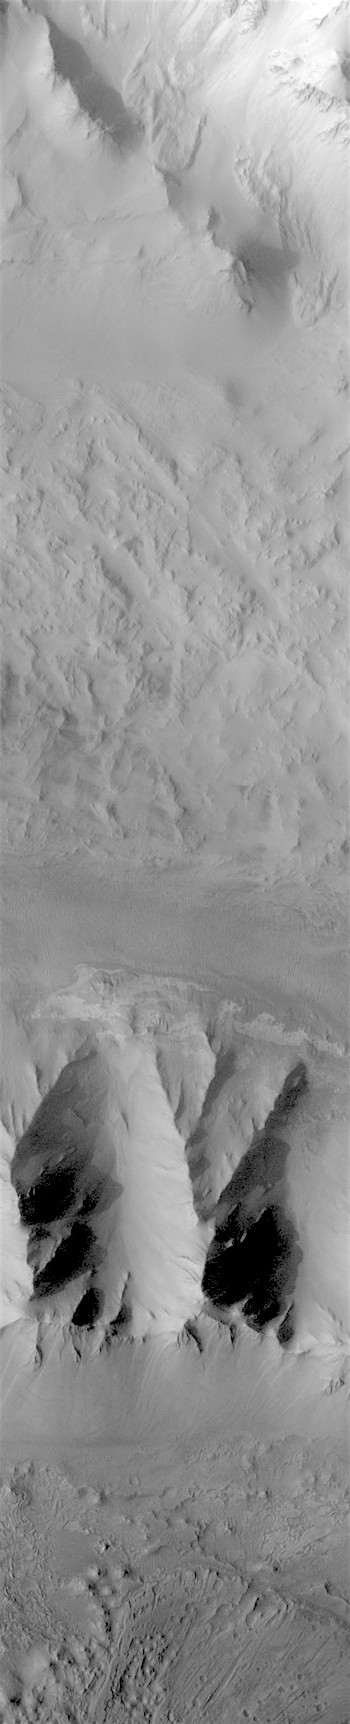 Tectonic widening of Ius Chasma (THEMIS_IOTD_20180222)